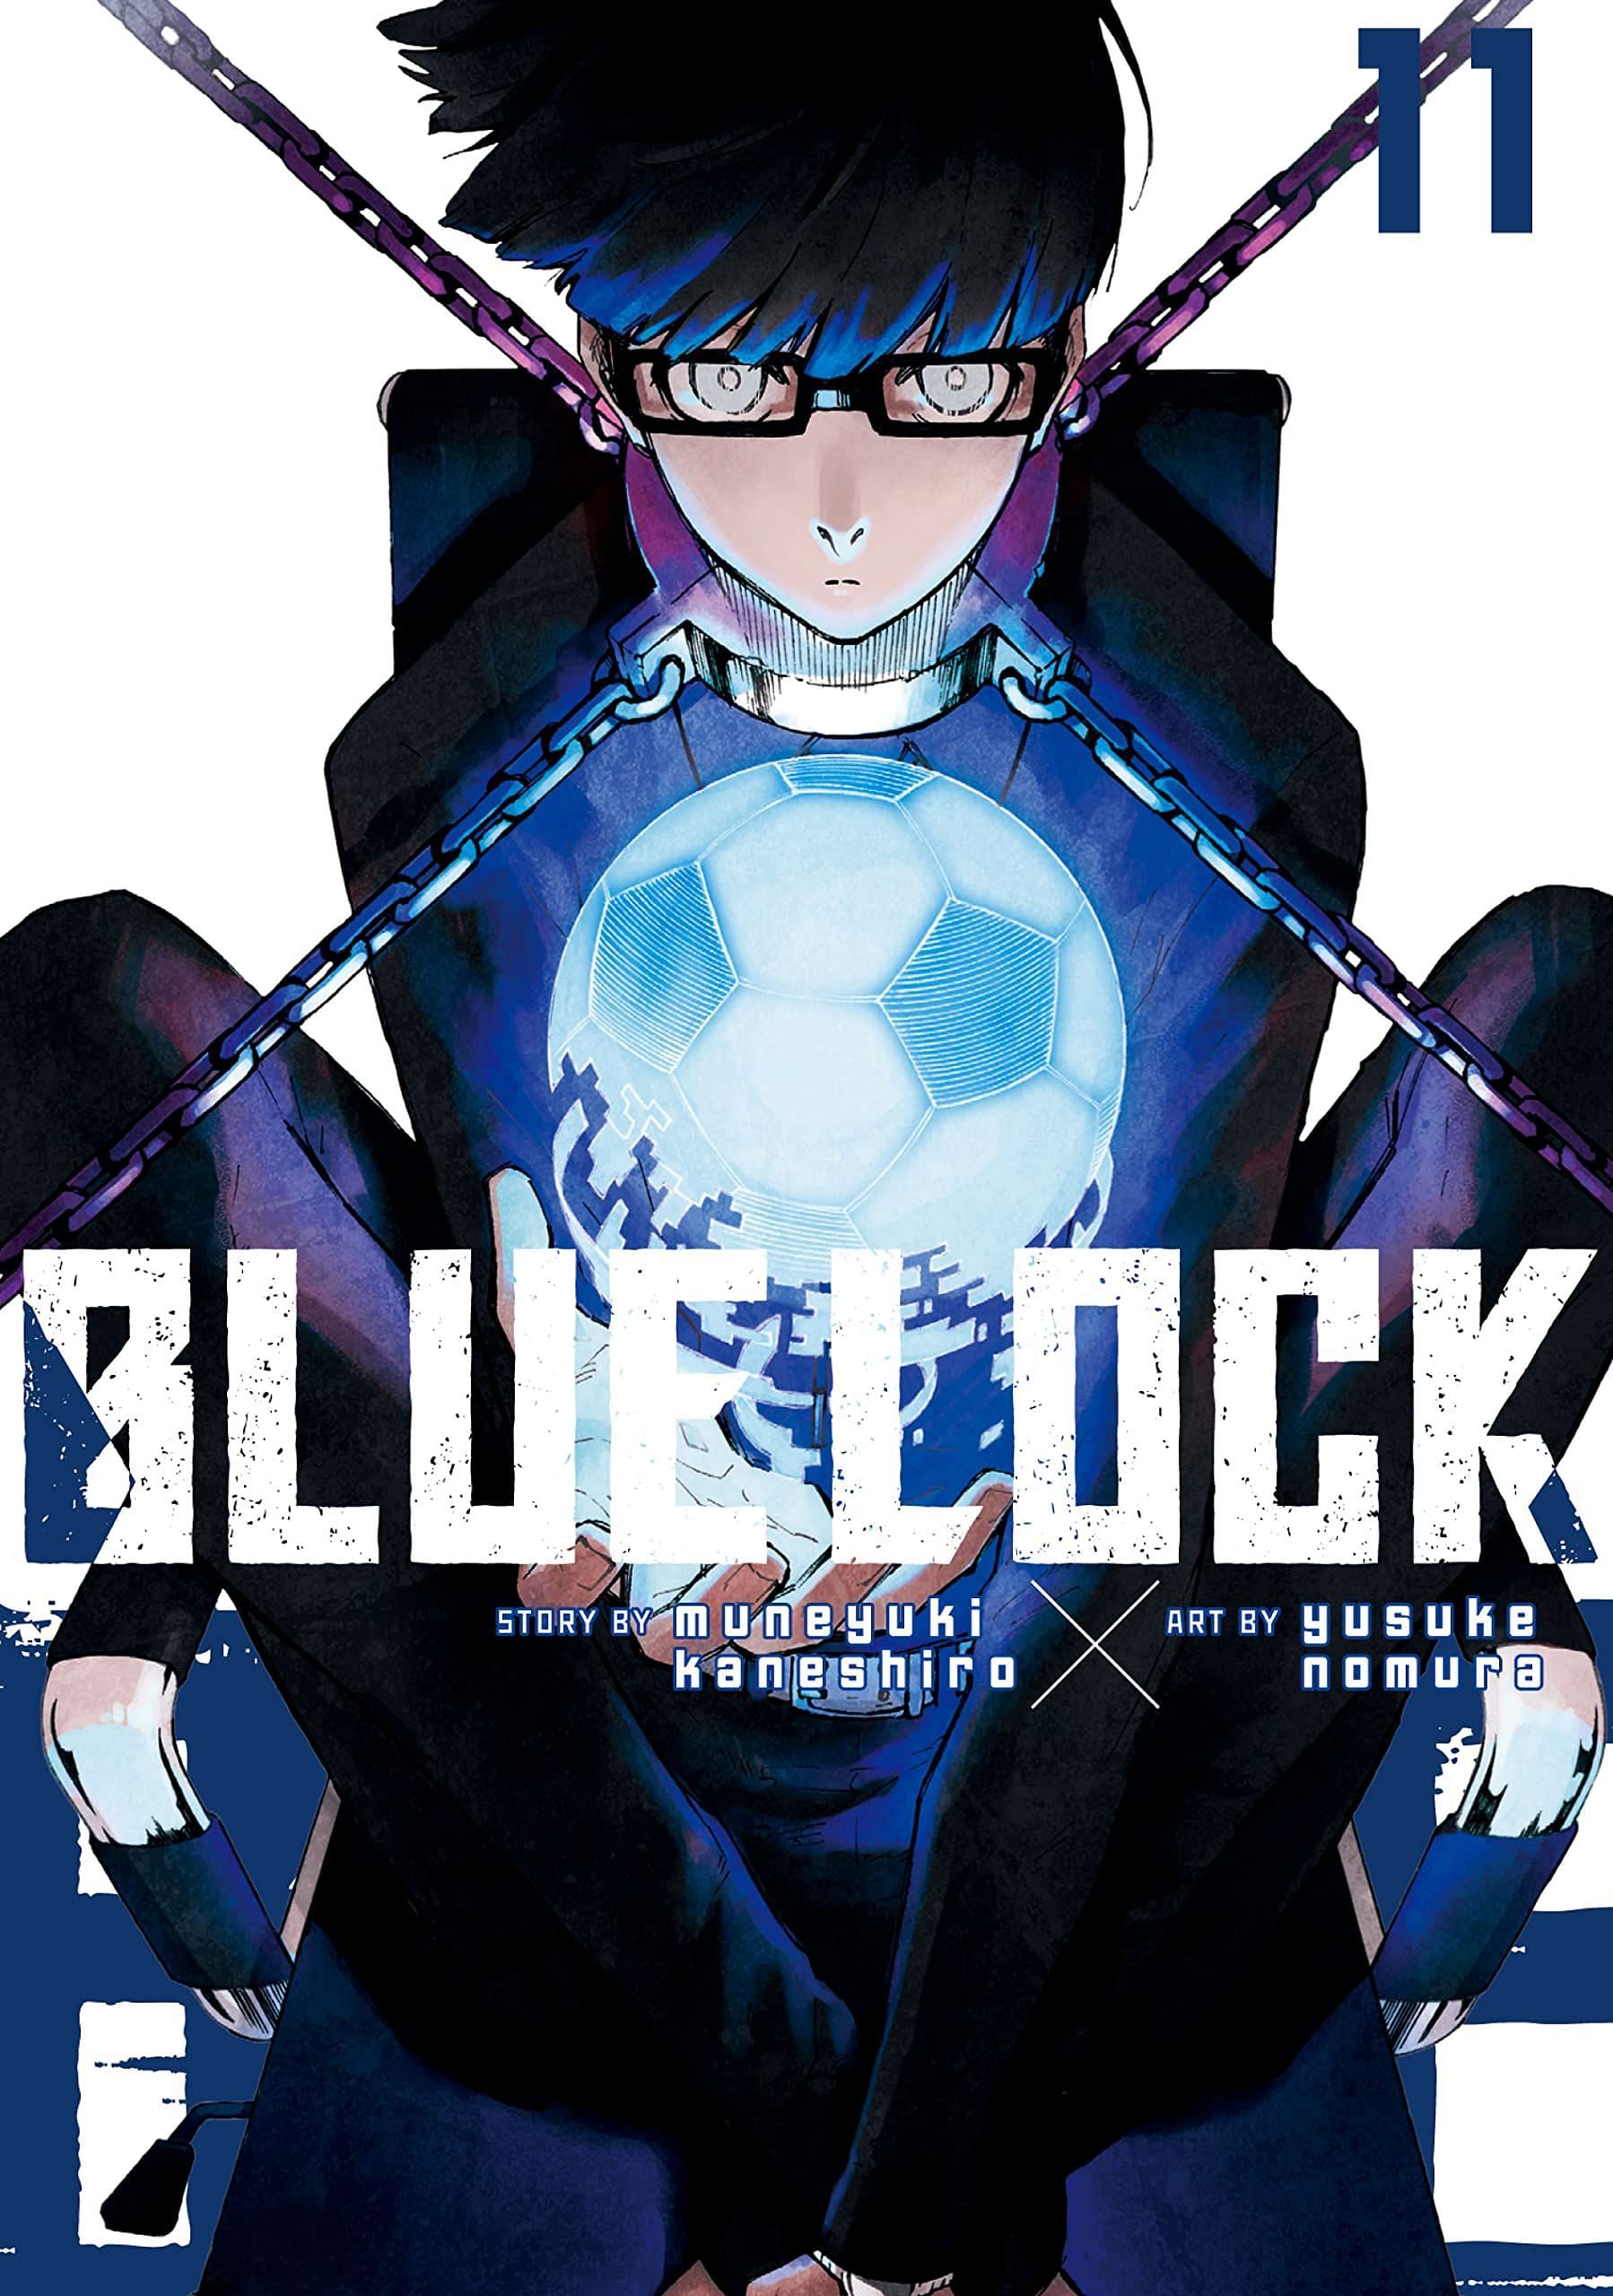 Blue Lock (Image via Muneyuki Kaneshiro and Yusuke Nomura)